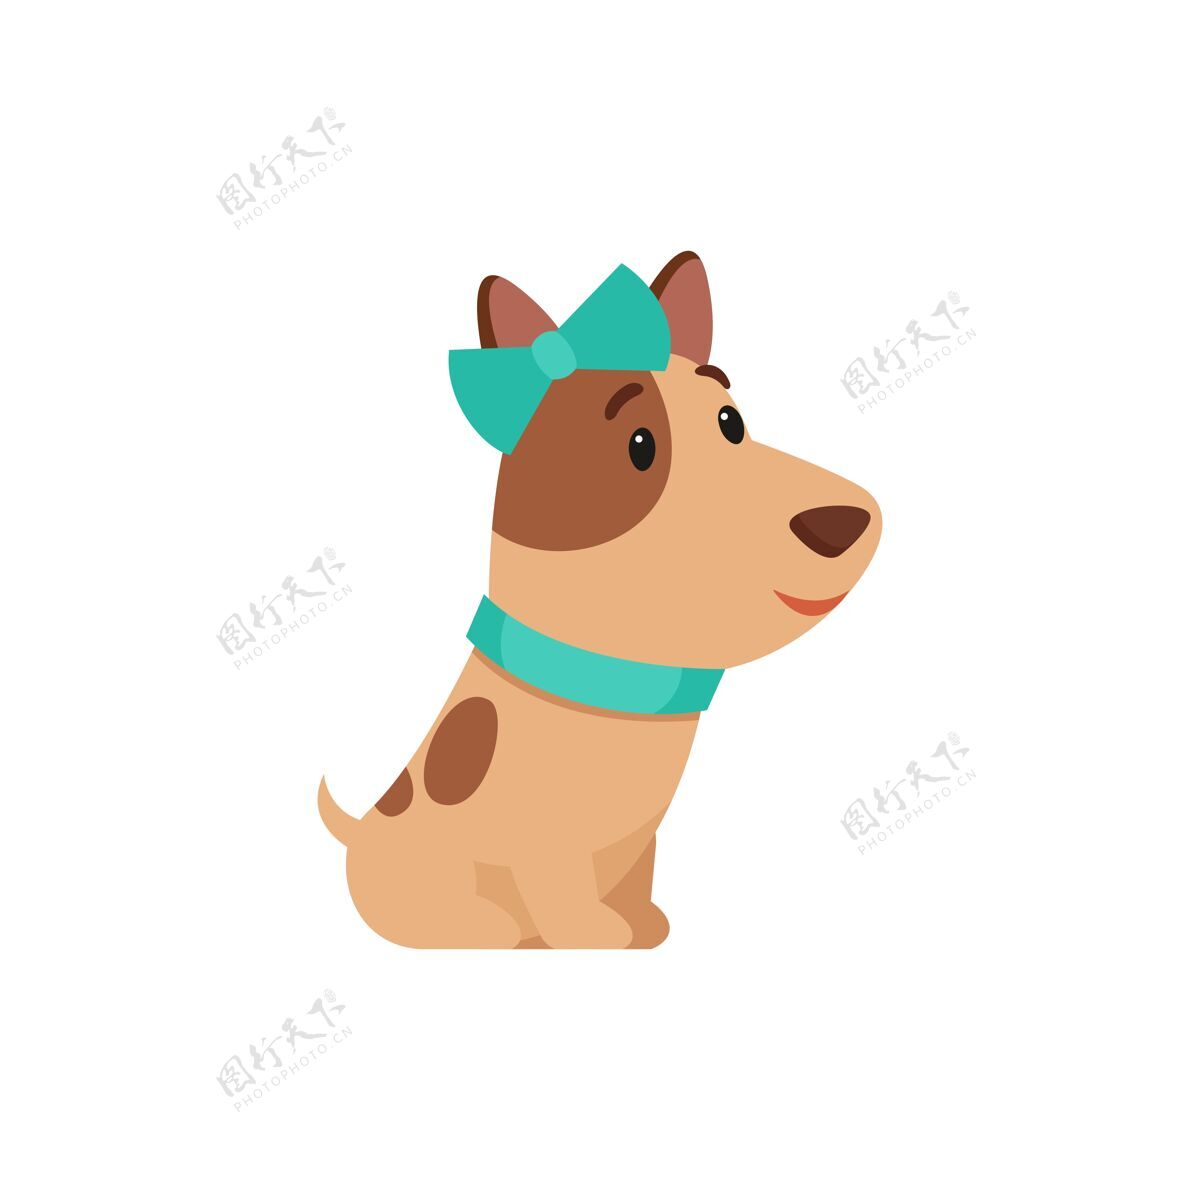 小狗可爱的杰克·拉塞尔 蓝色领结项圈姿势友好